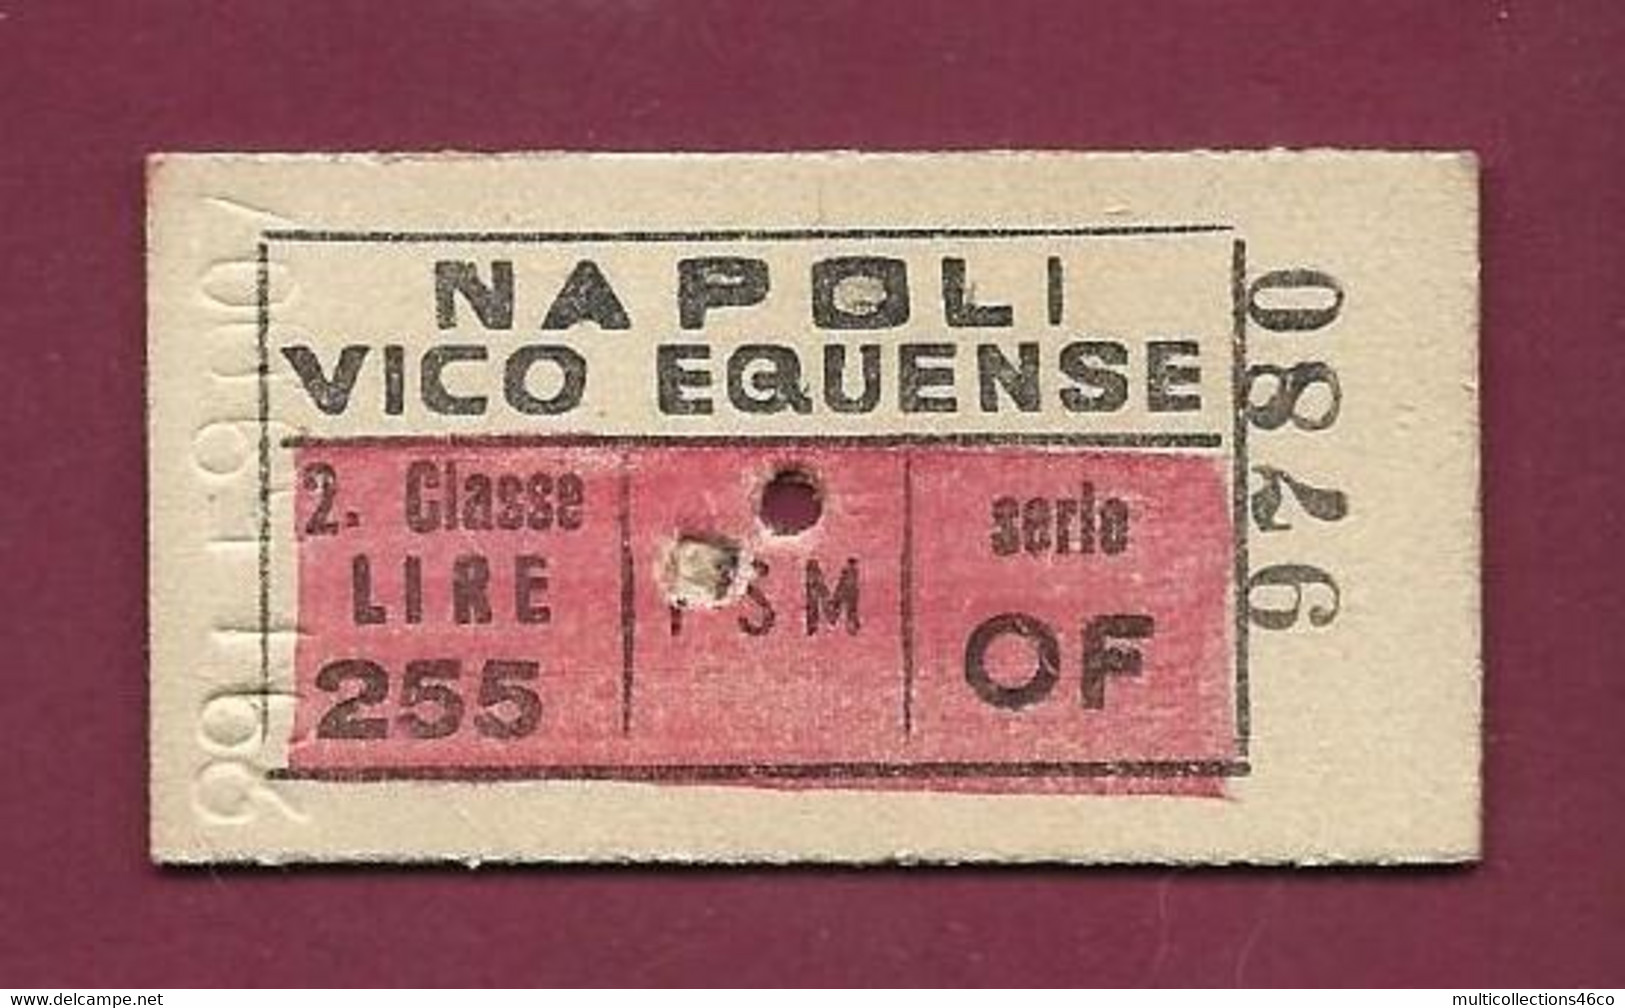 081021 - TICKET TRANSPORT METRO CHEMIN DE FER TRAMWAY - ITALIE NAPOLI VICO EQUENSE 9780 Serie OF 1959 - Europa